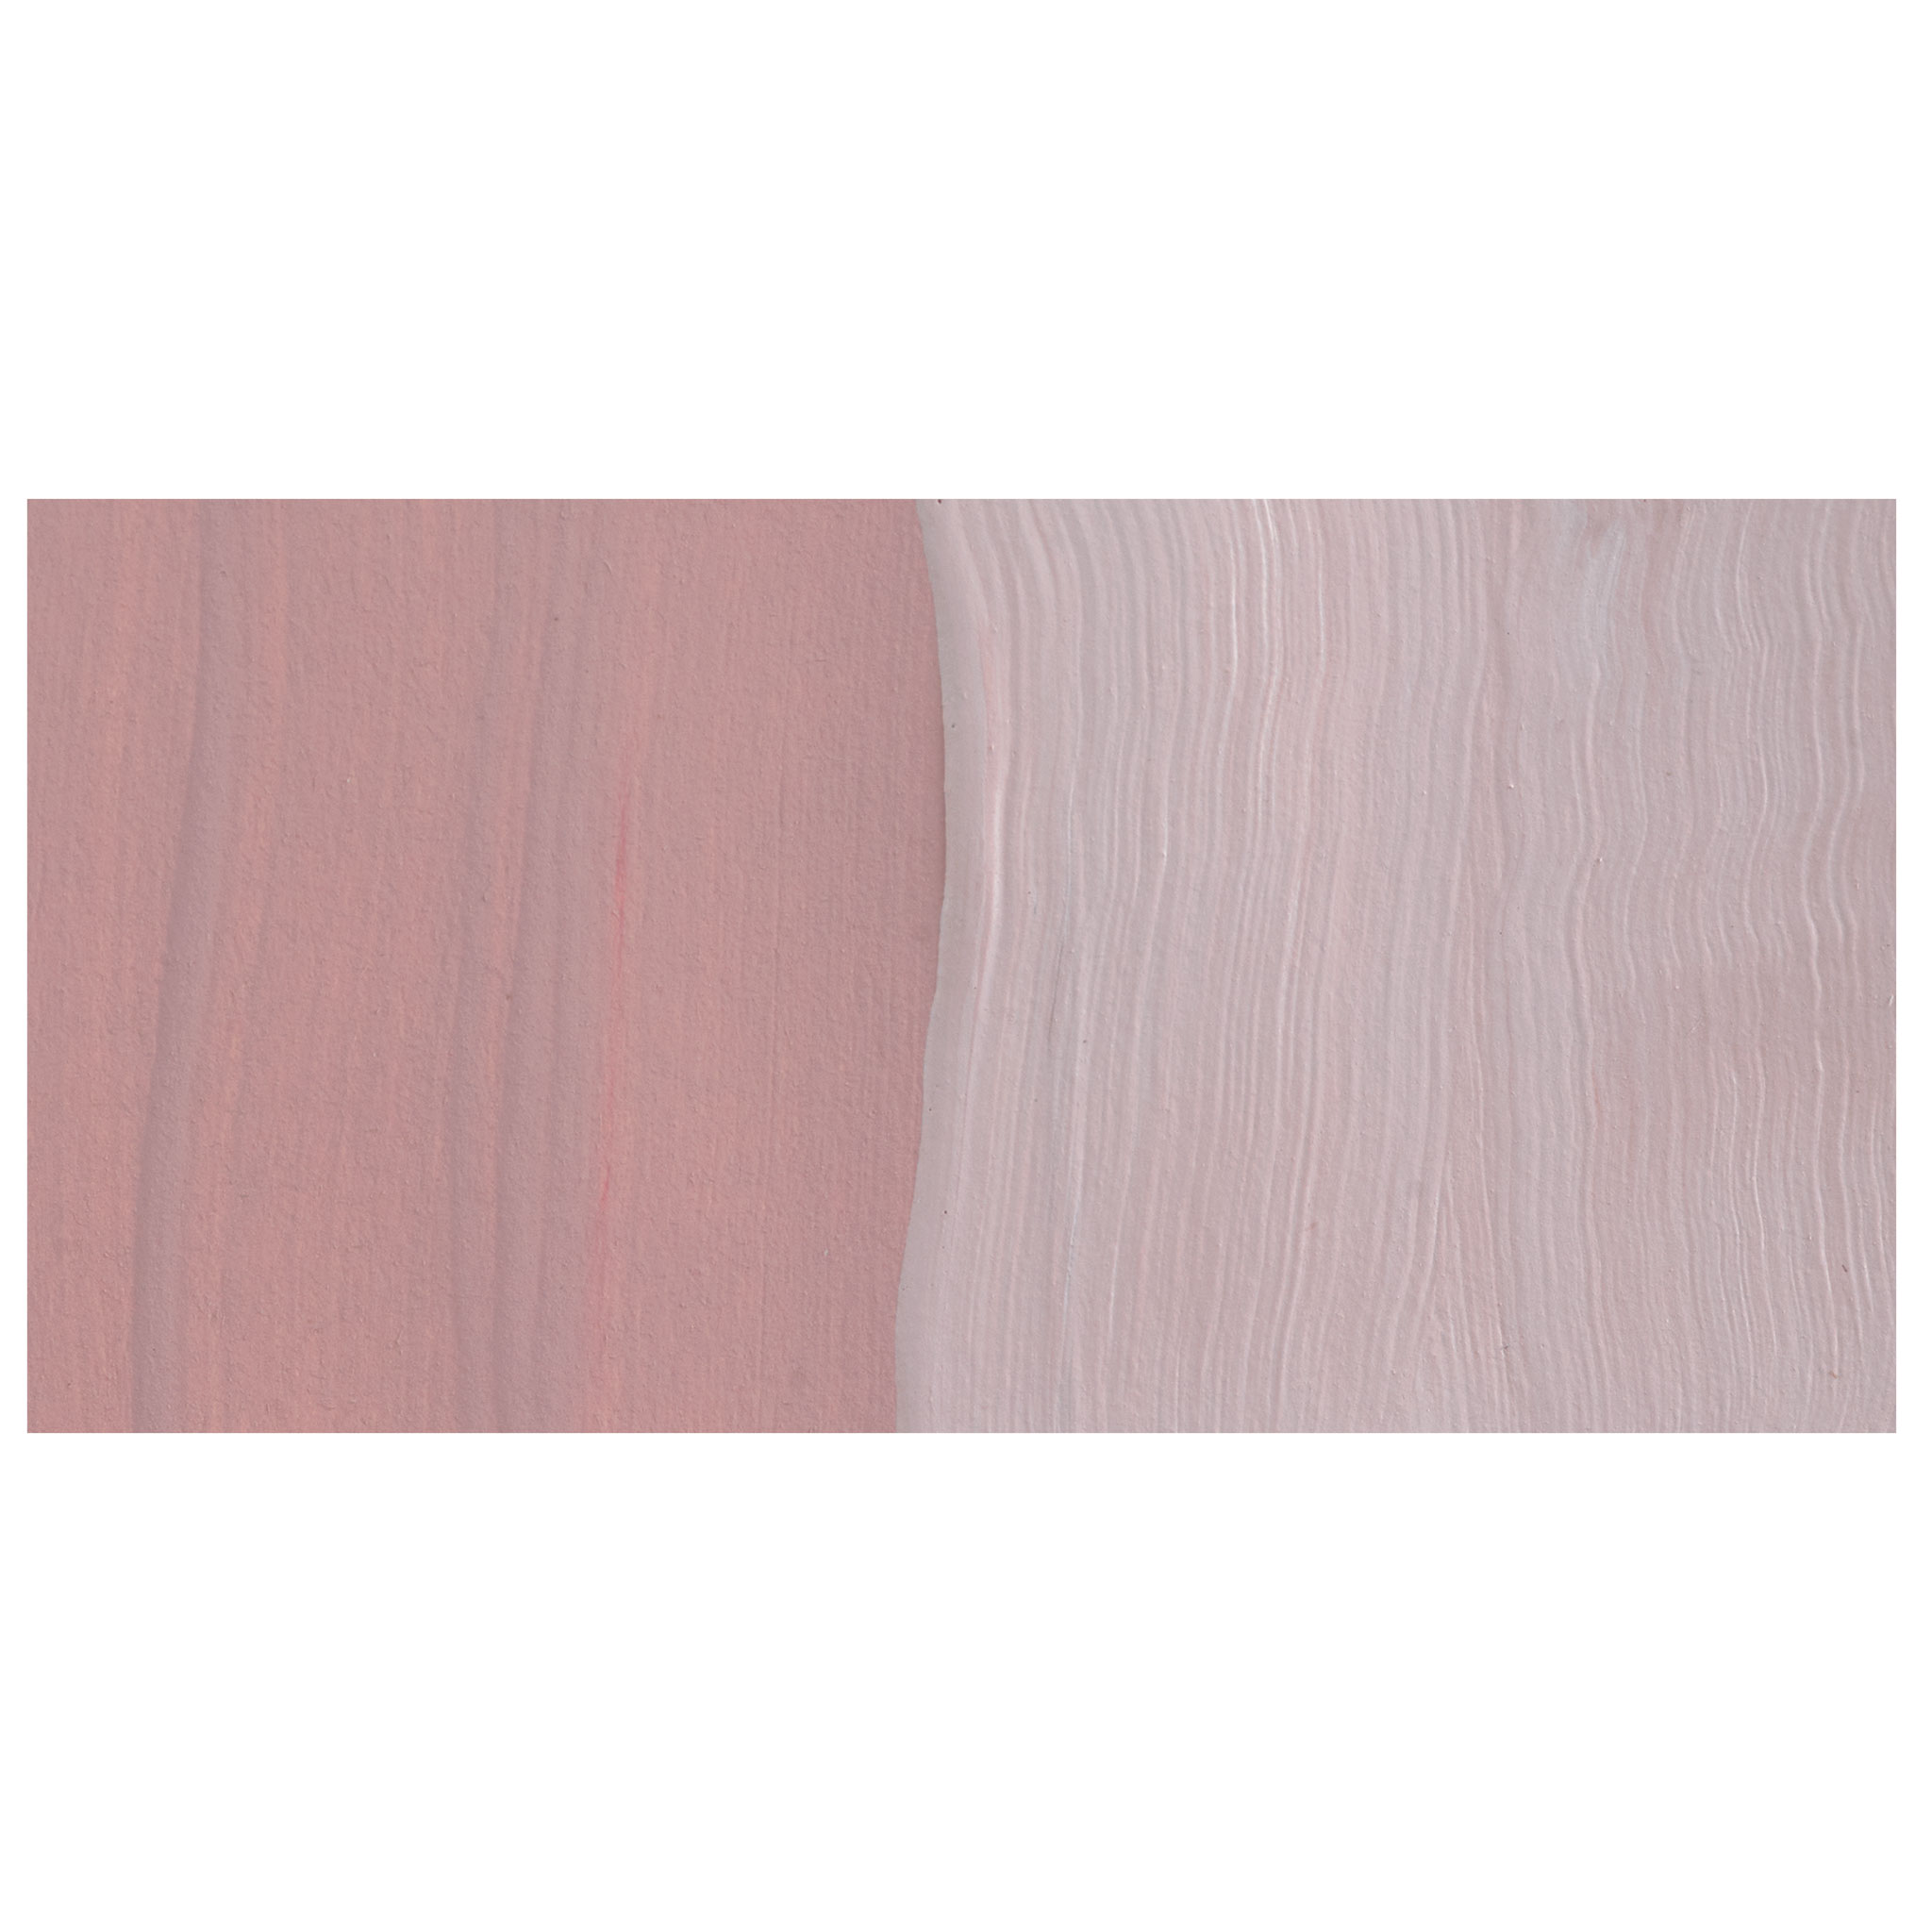 Americana Acrylic 2oz Paint - Blush Pink